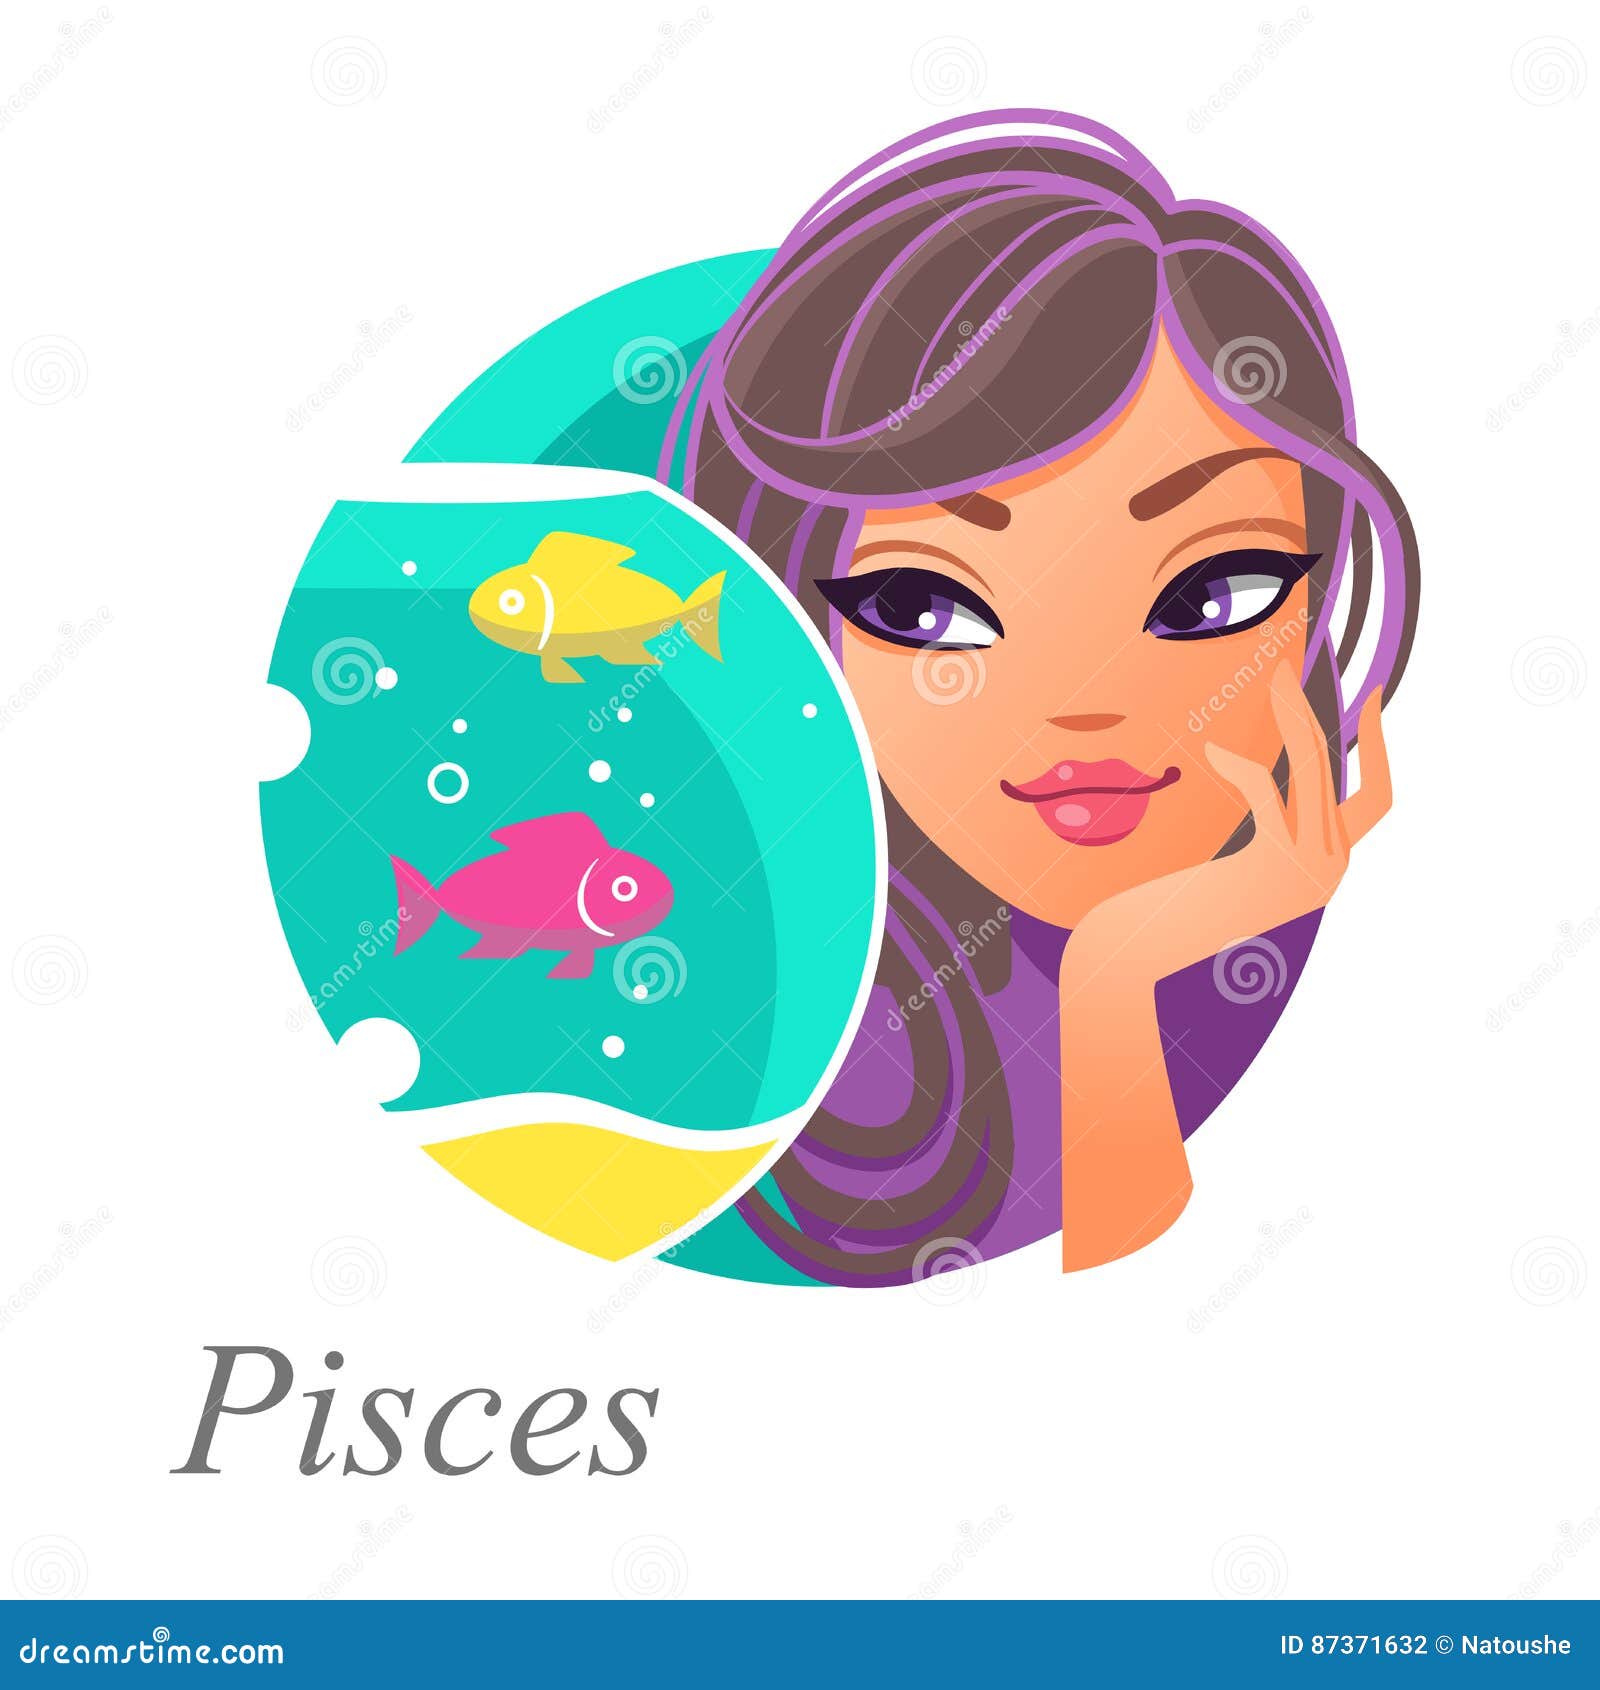 ¿Cómo son los Piscis? Las características más representativas de su personalidad